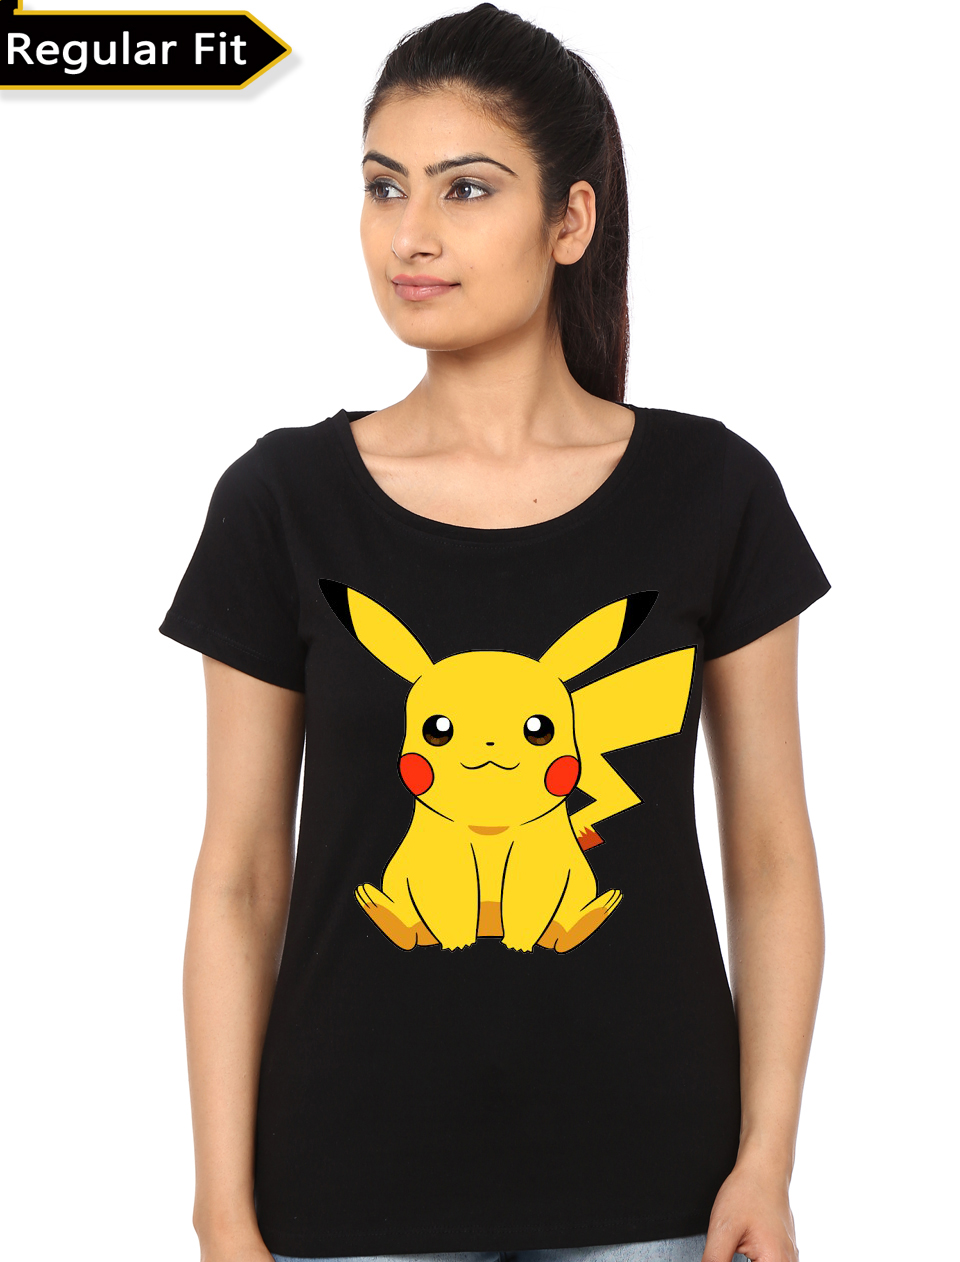 pikachu t shirt women's india